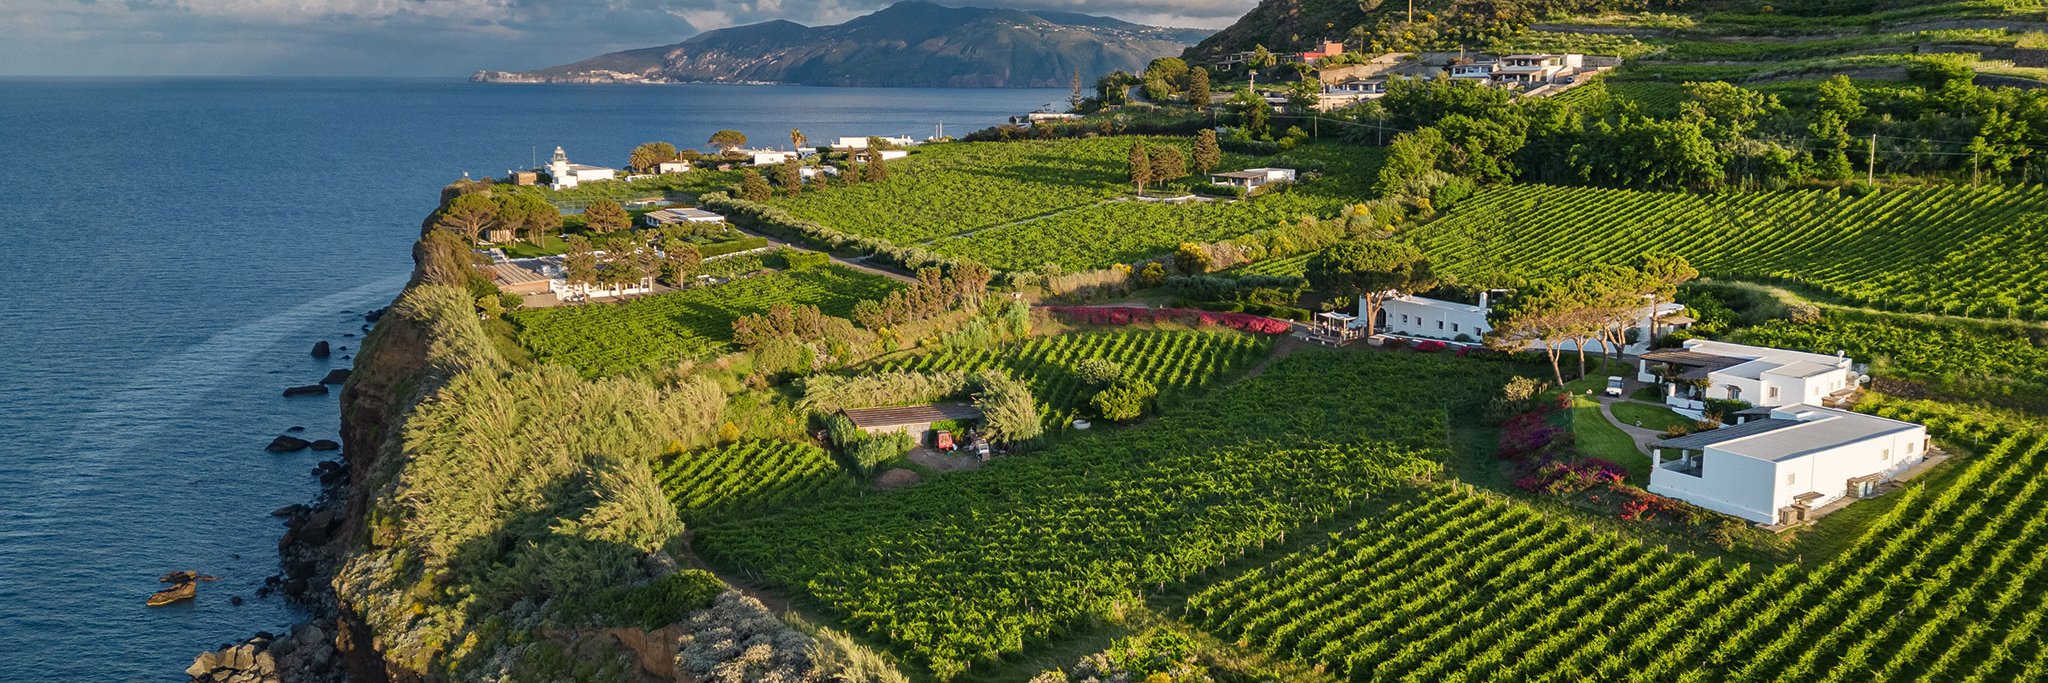 Traumhafte Kulisse: Über den steilen Klippen von Salina breiten sich die Weingärten der Tenuta Capofaro aus. Mittendrin liegt das Hotel »Capofaro Locanda & Malvasia«. 